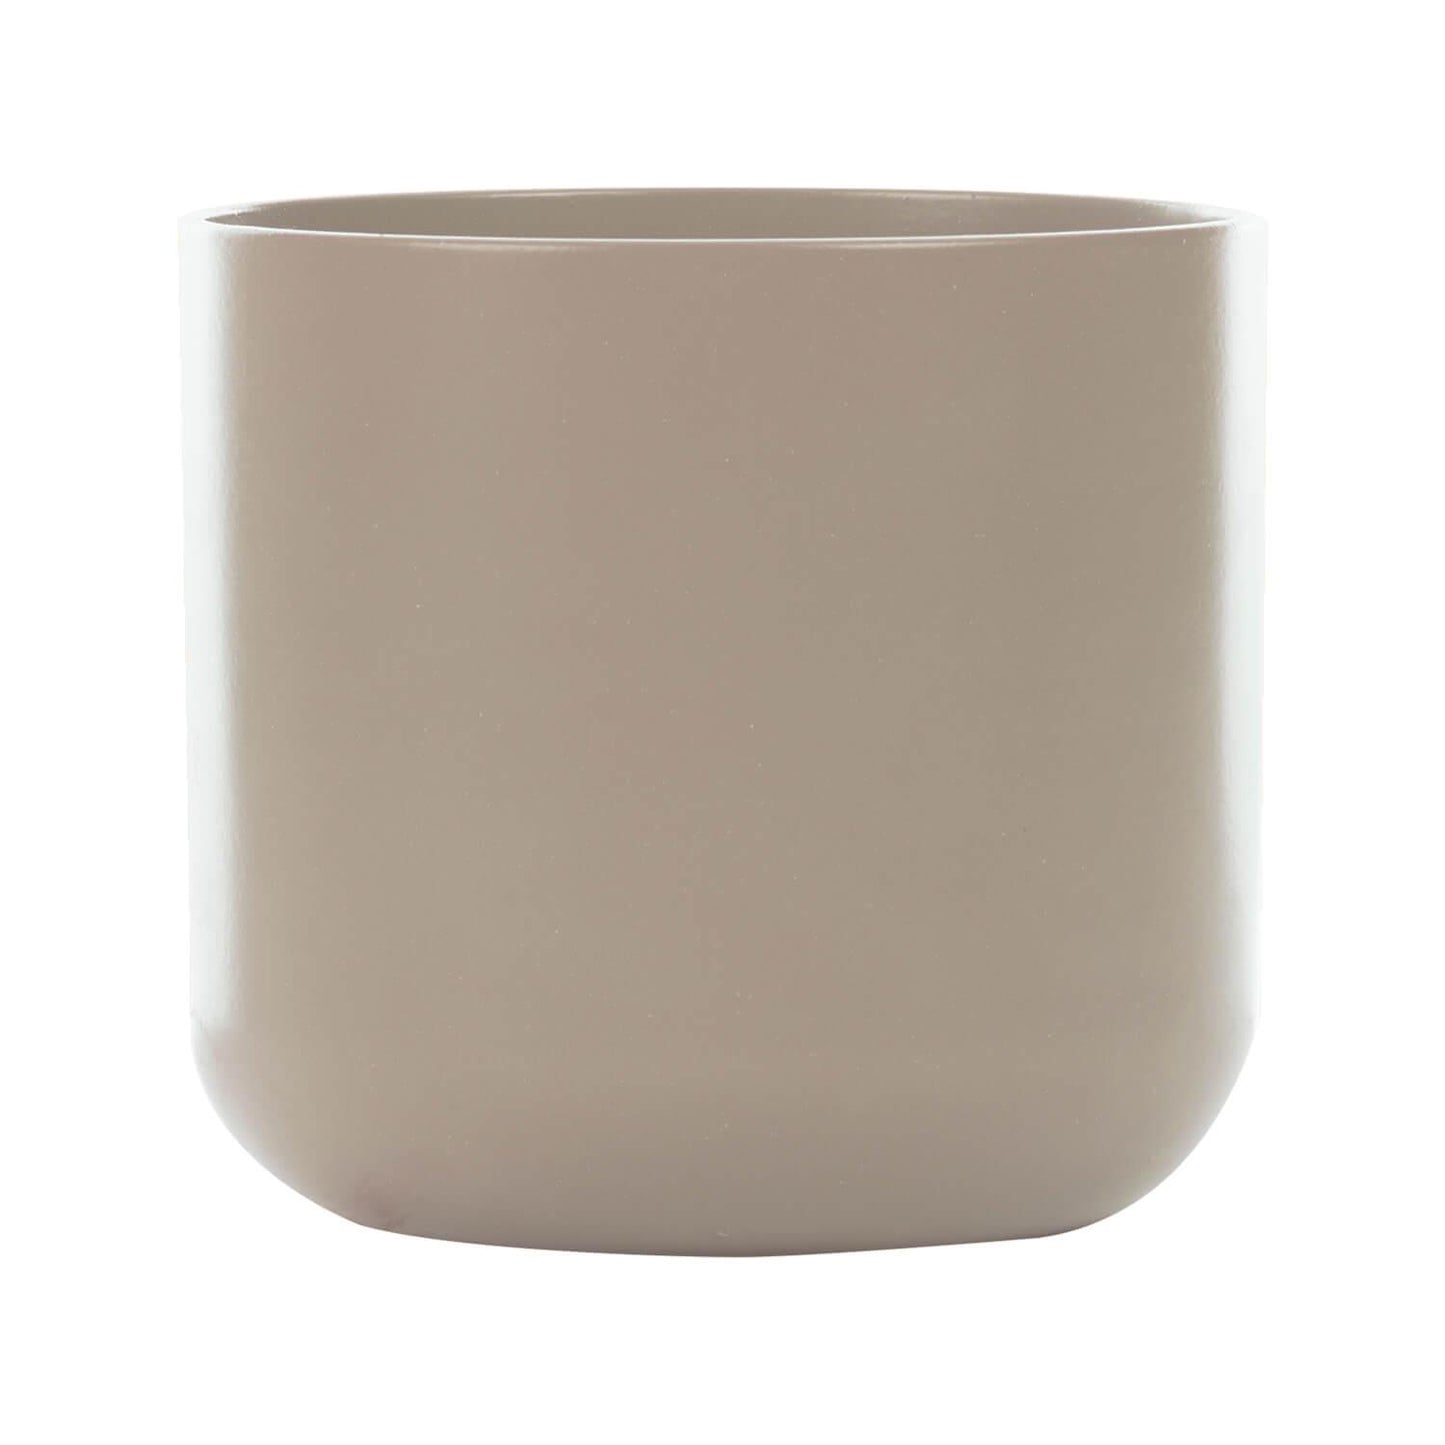 Dale Ceramic Pot